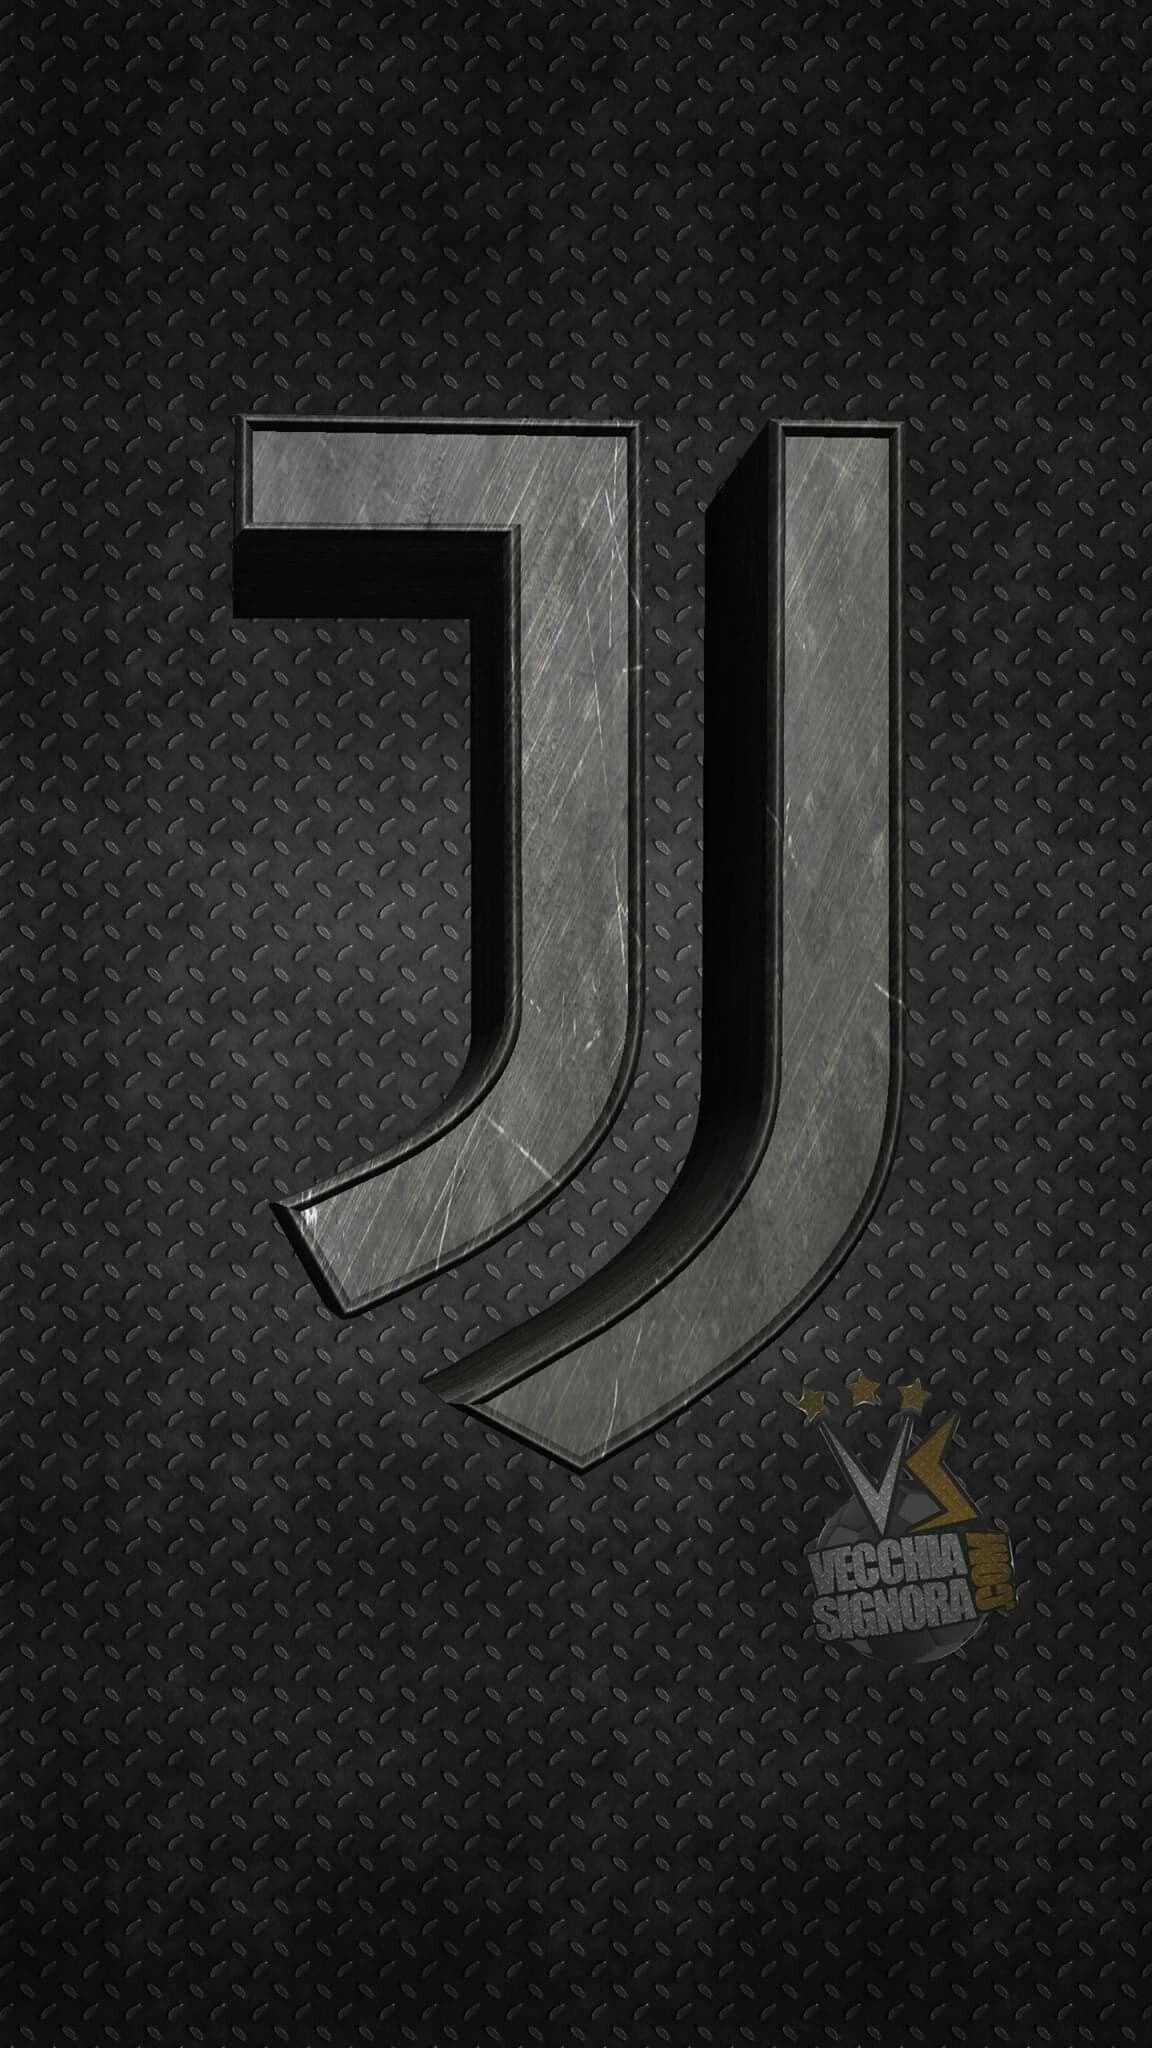 Juventus Wallpapers Top Free Juventus Backgrounds Wallpaperaccess